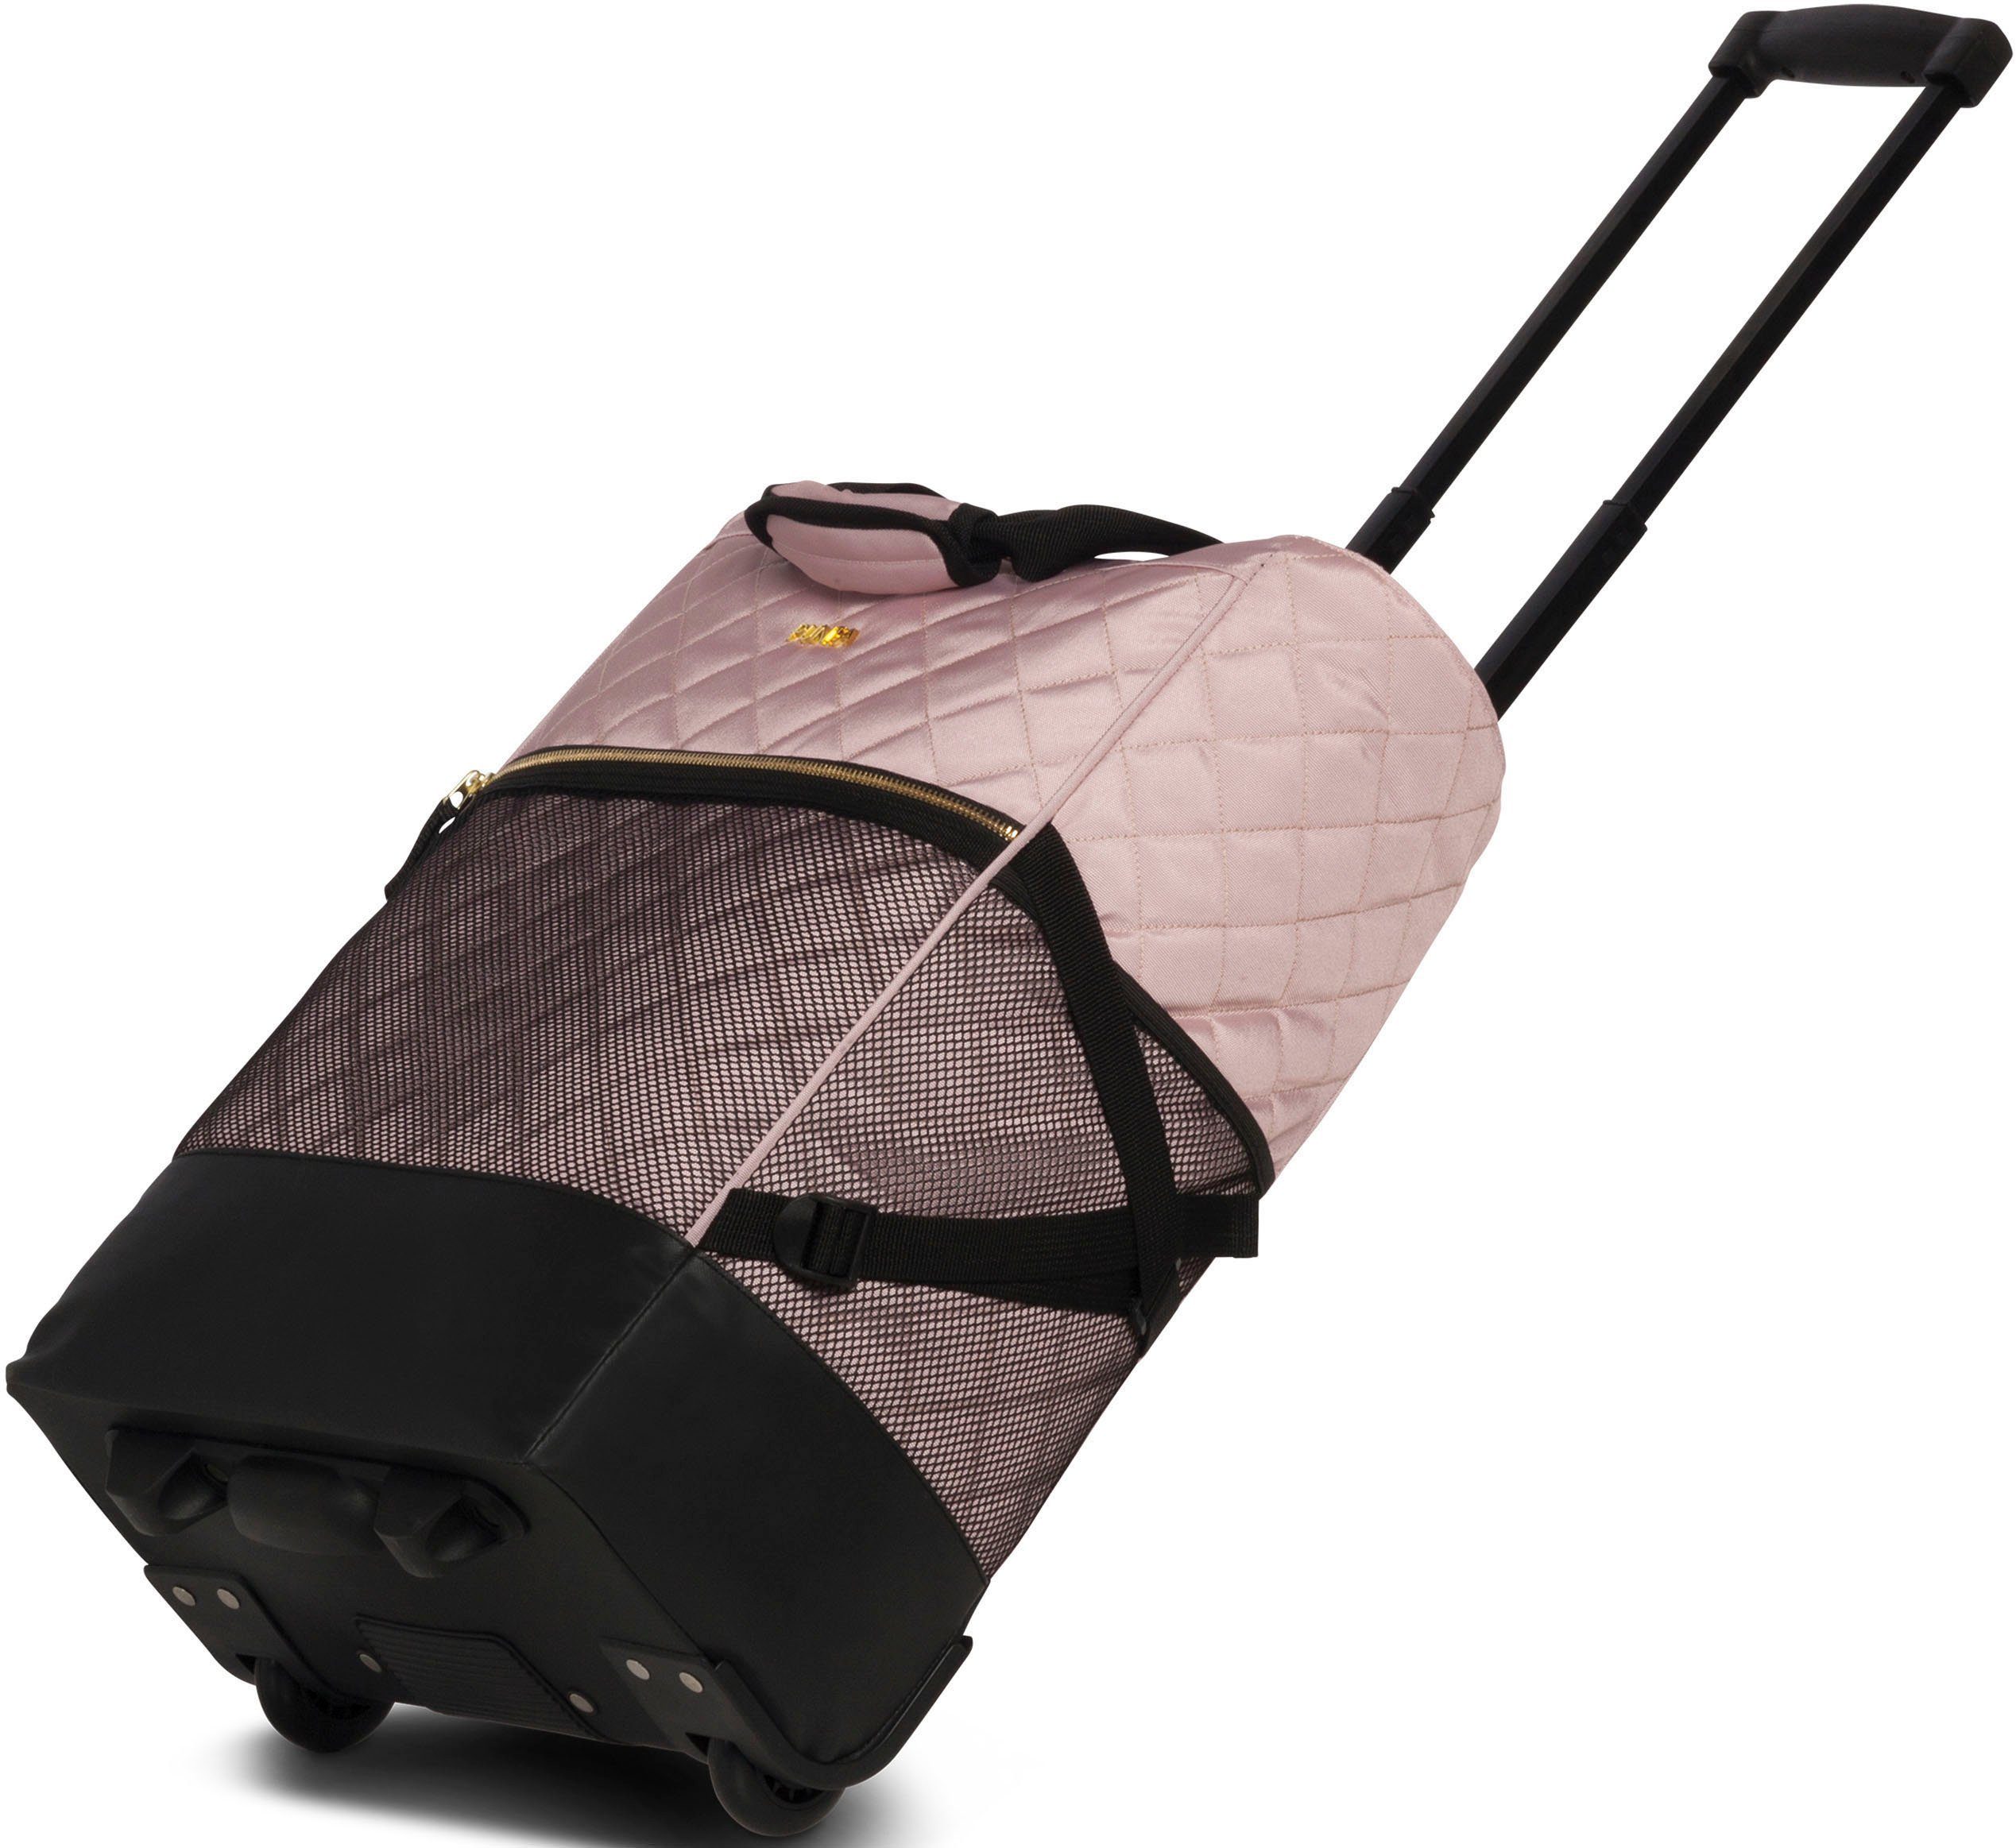 abgestepter 33 und l, mit Einkaufstrolley edler Golddetails fabrizio® Punta-Wheel-Shopping-Roller, rosa Look Oberfläche